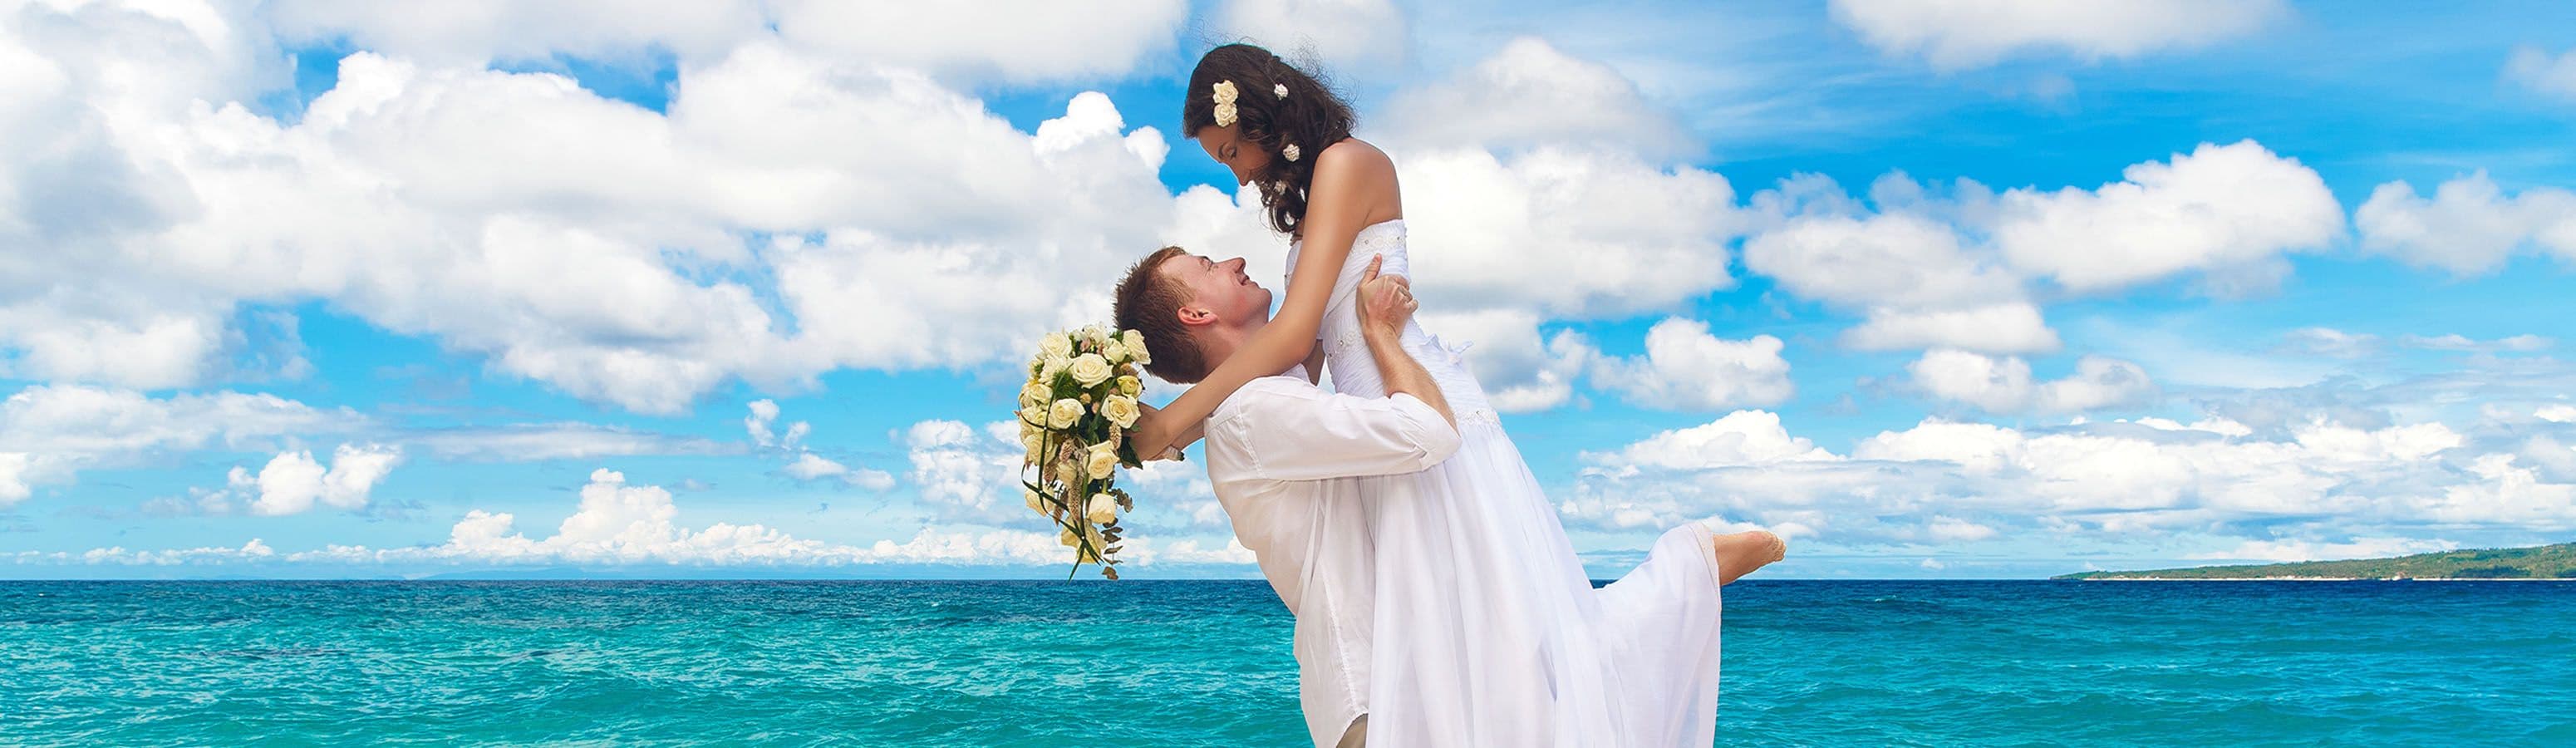 Mi lenne, ha a nyári vakációt összekapcsolnánk egy esküvői ceremóniával?